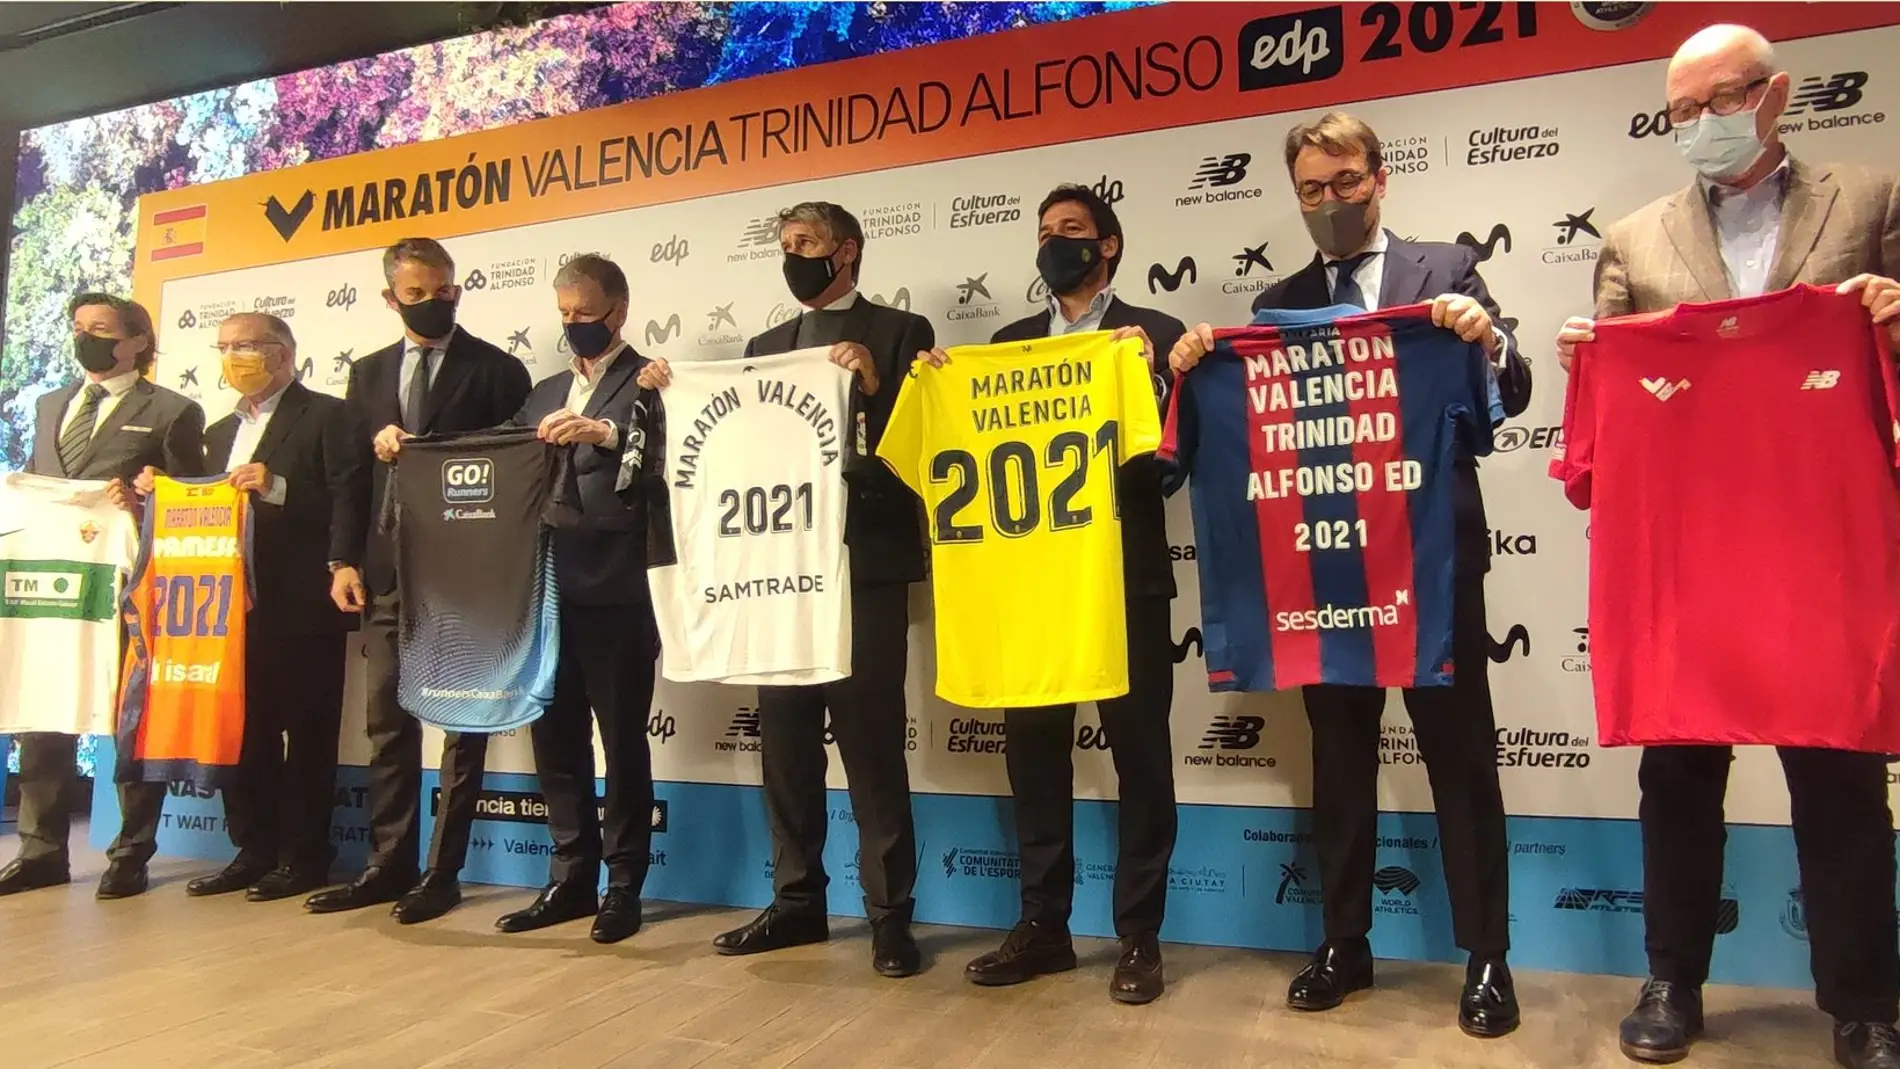 Los grandes clubes de élite valencianos apoyan el Maraton Valencia Trinidad Alfonso EDP